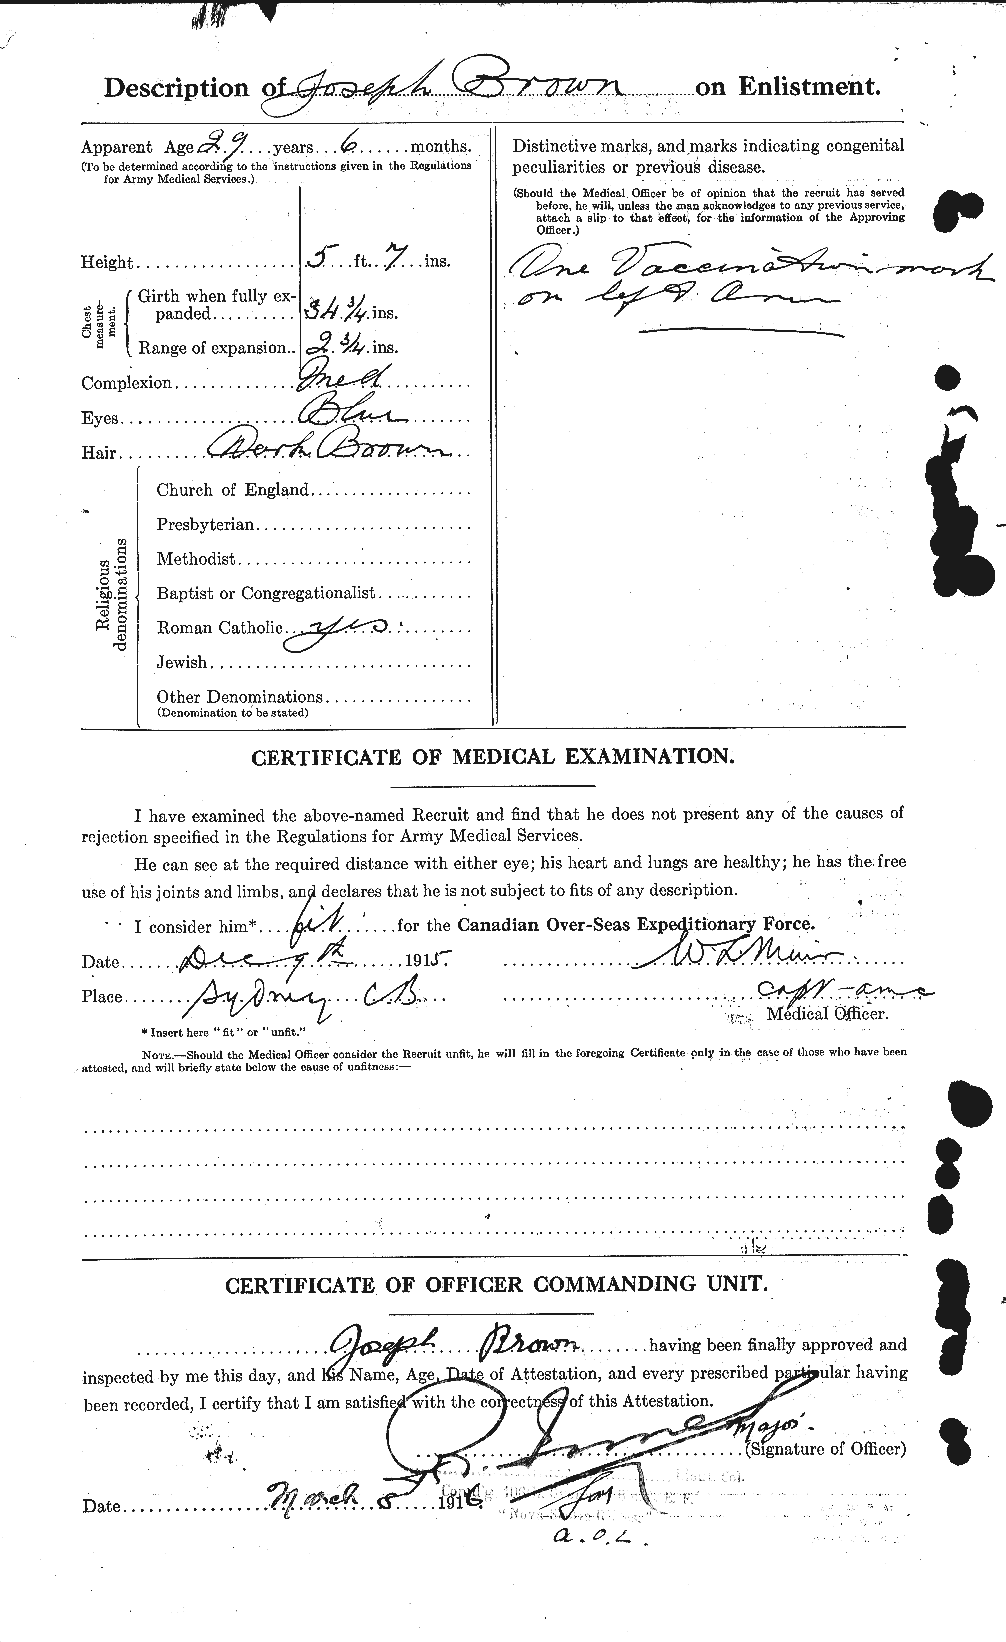 Dossiers du Personnel de la Première Guerre mondiale - CEC 265951b